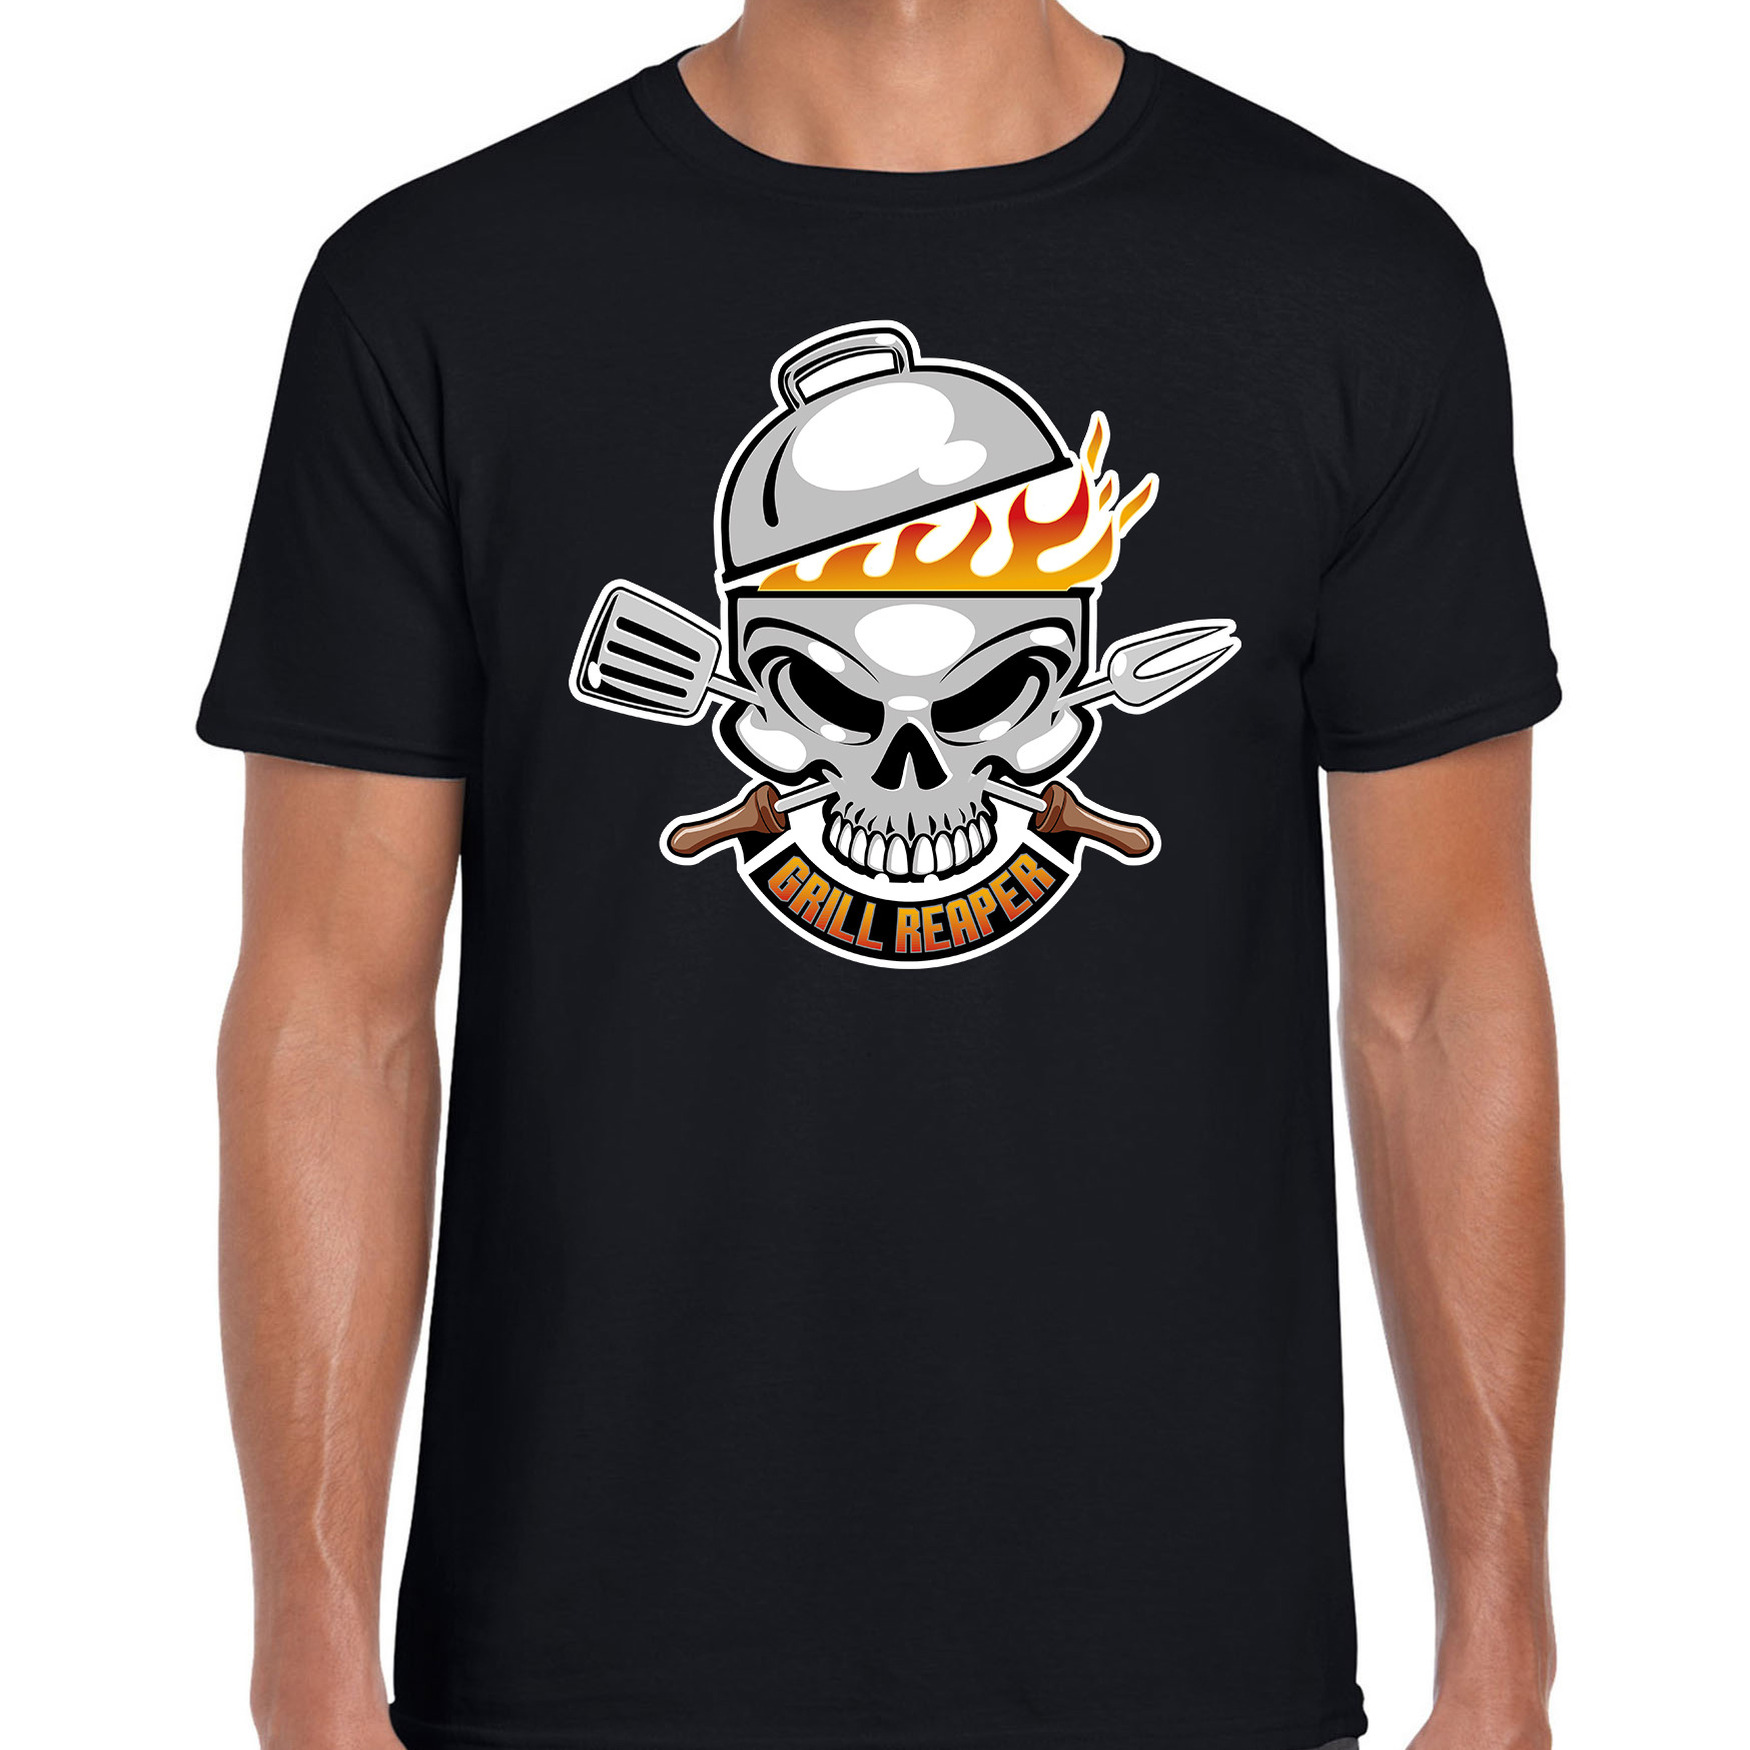 Grill reaper barbecue cadeau t-shirt zwart voor heren